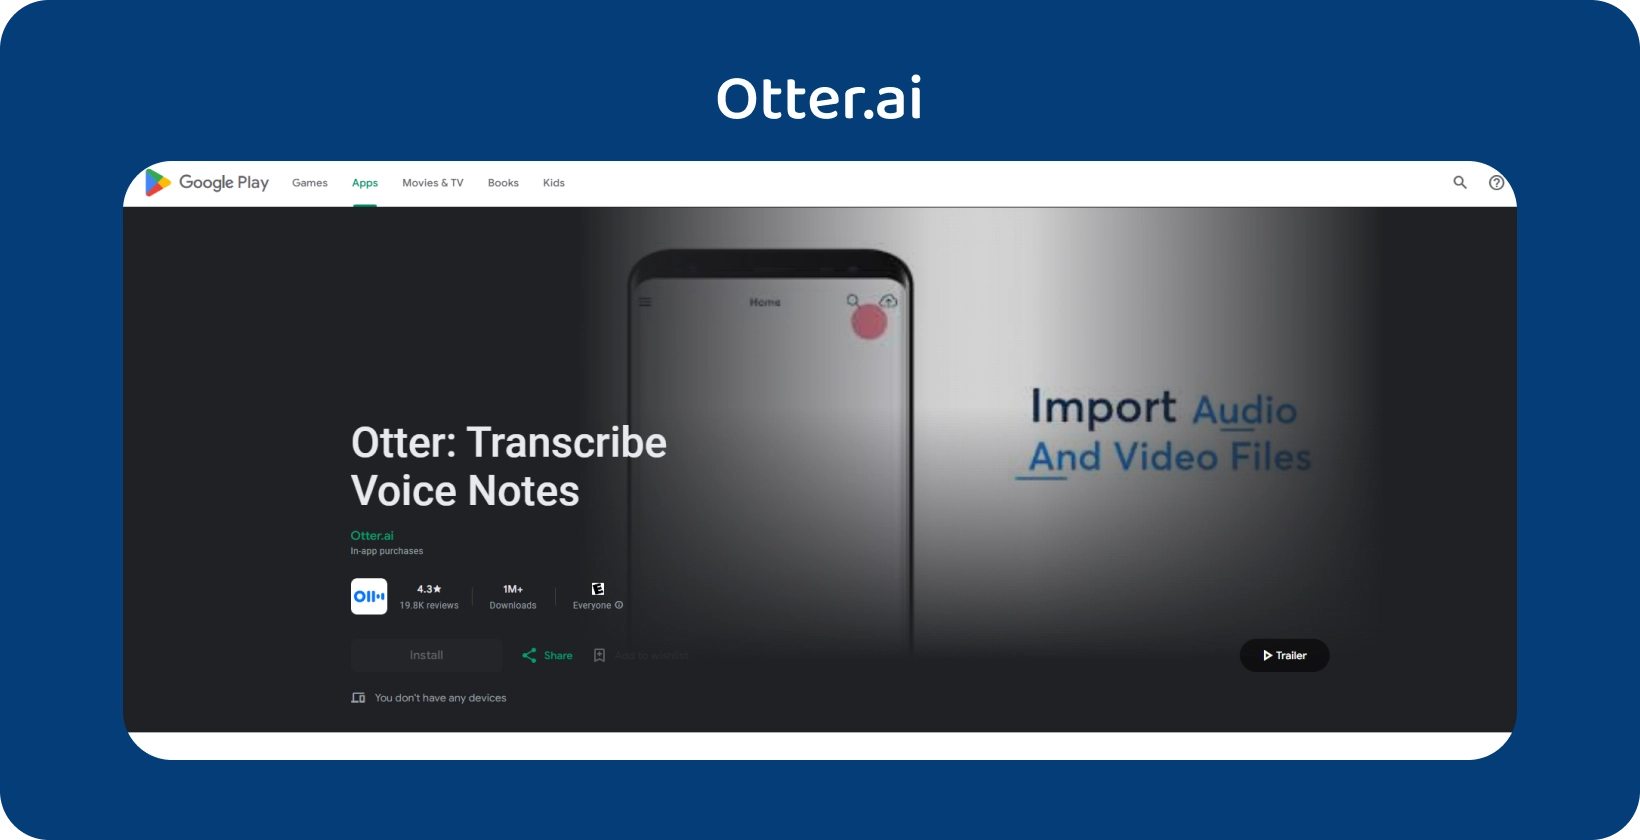 Otter.ai aplikaciju na Google Play, koja sadrži transkripciju glasovne note i mogućnosti uvoza audio/video datoteke.